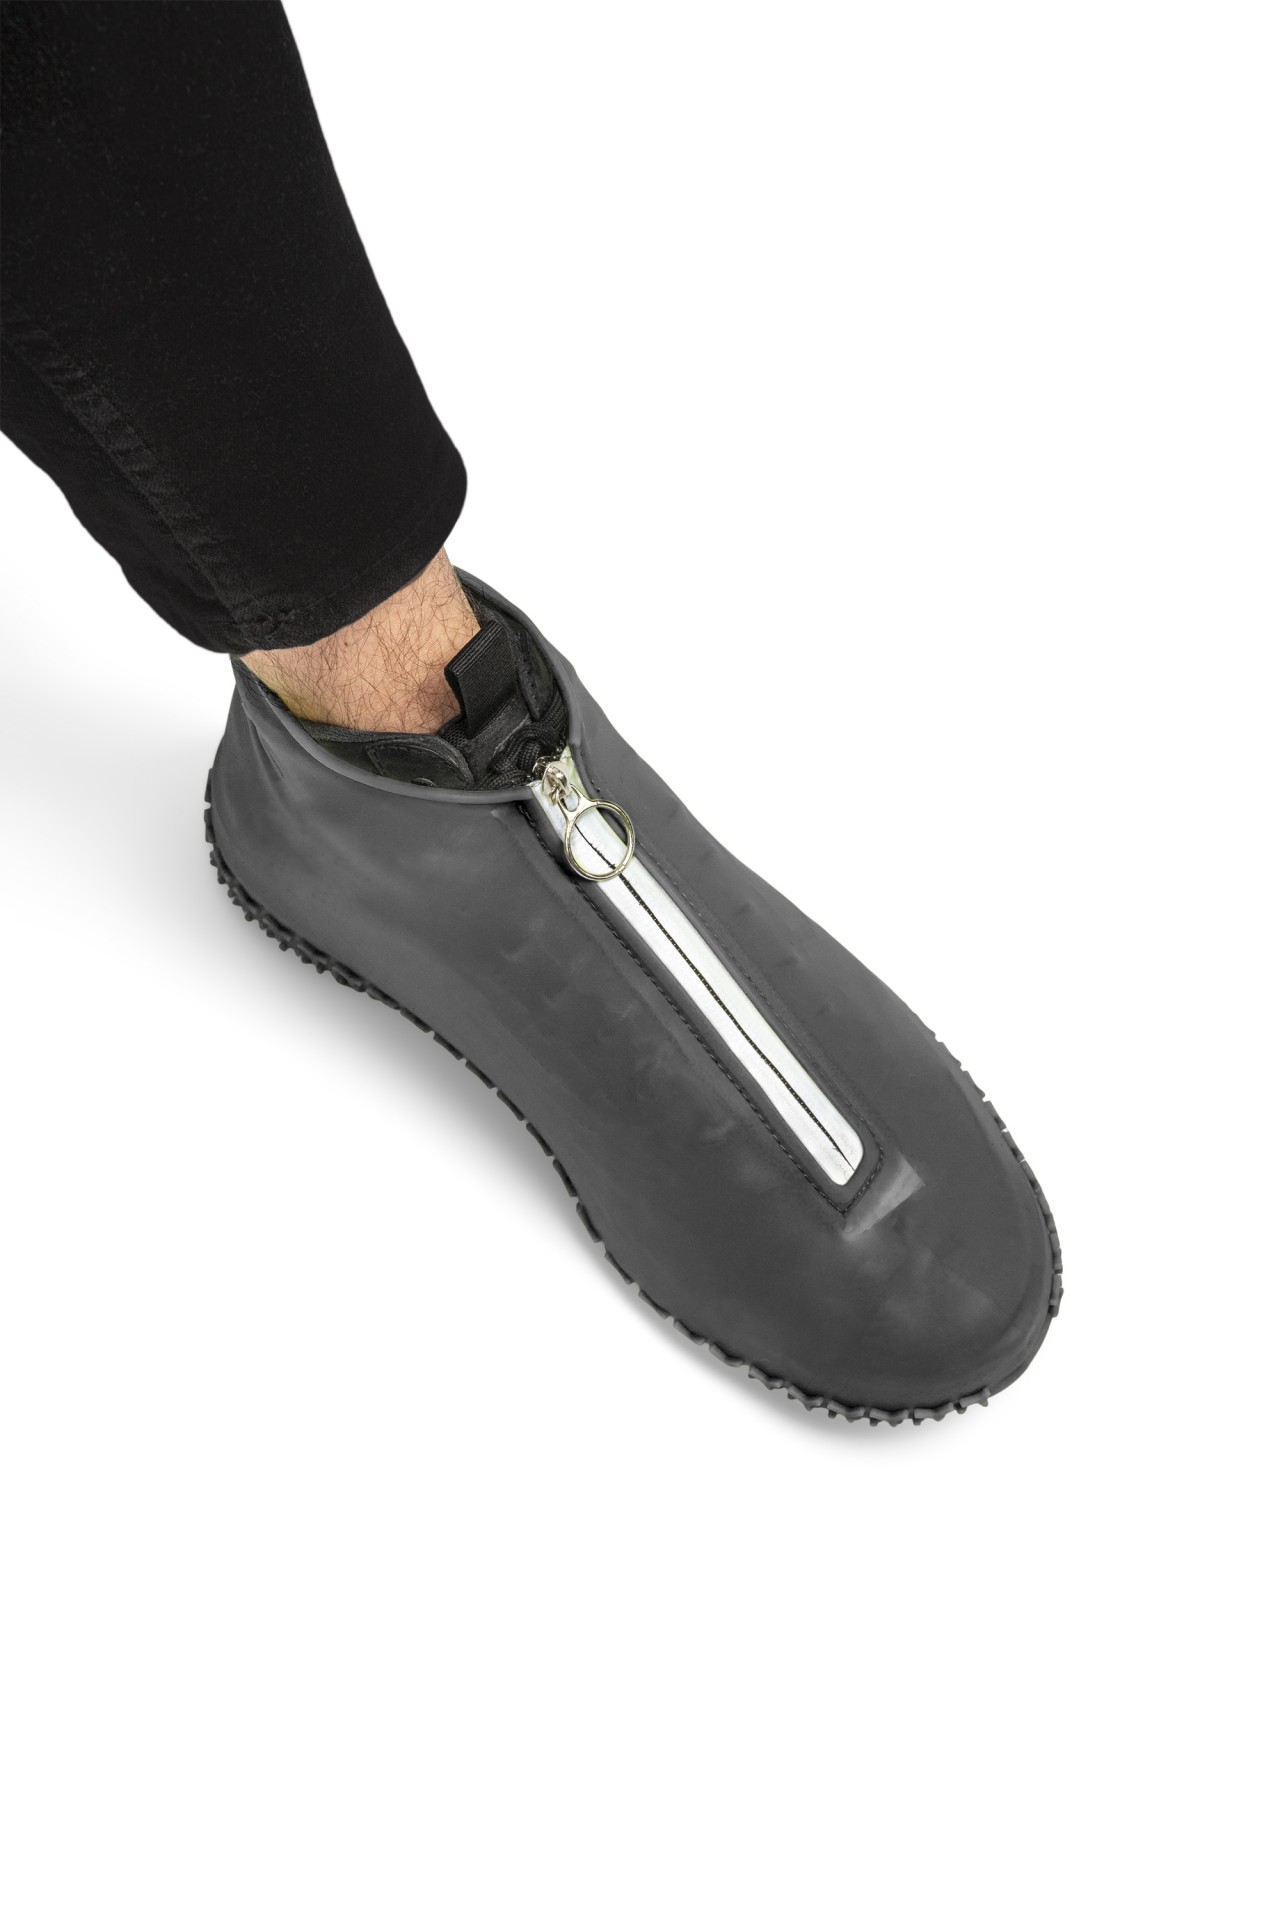 Couvre-chaussures imperméable en silicone pour bottes de travail - Haute  élasticité - Design à double boutonnage pour éviter la saleté de vos  précieuses chaussures (couleur : D, taille : XXXL (30,5 cm)) : :  Mode